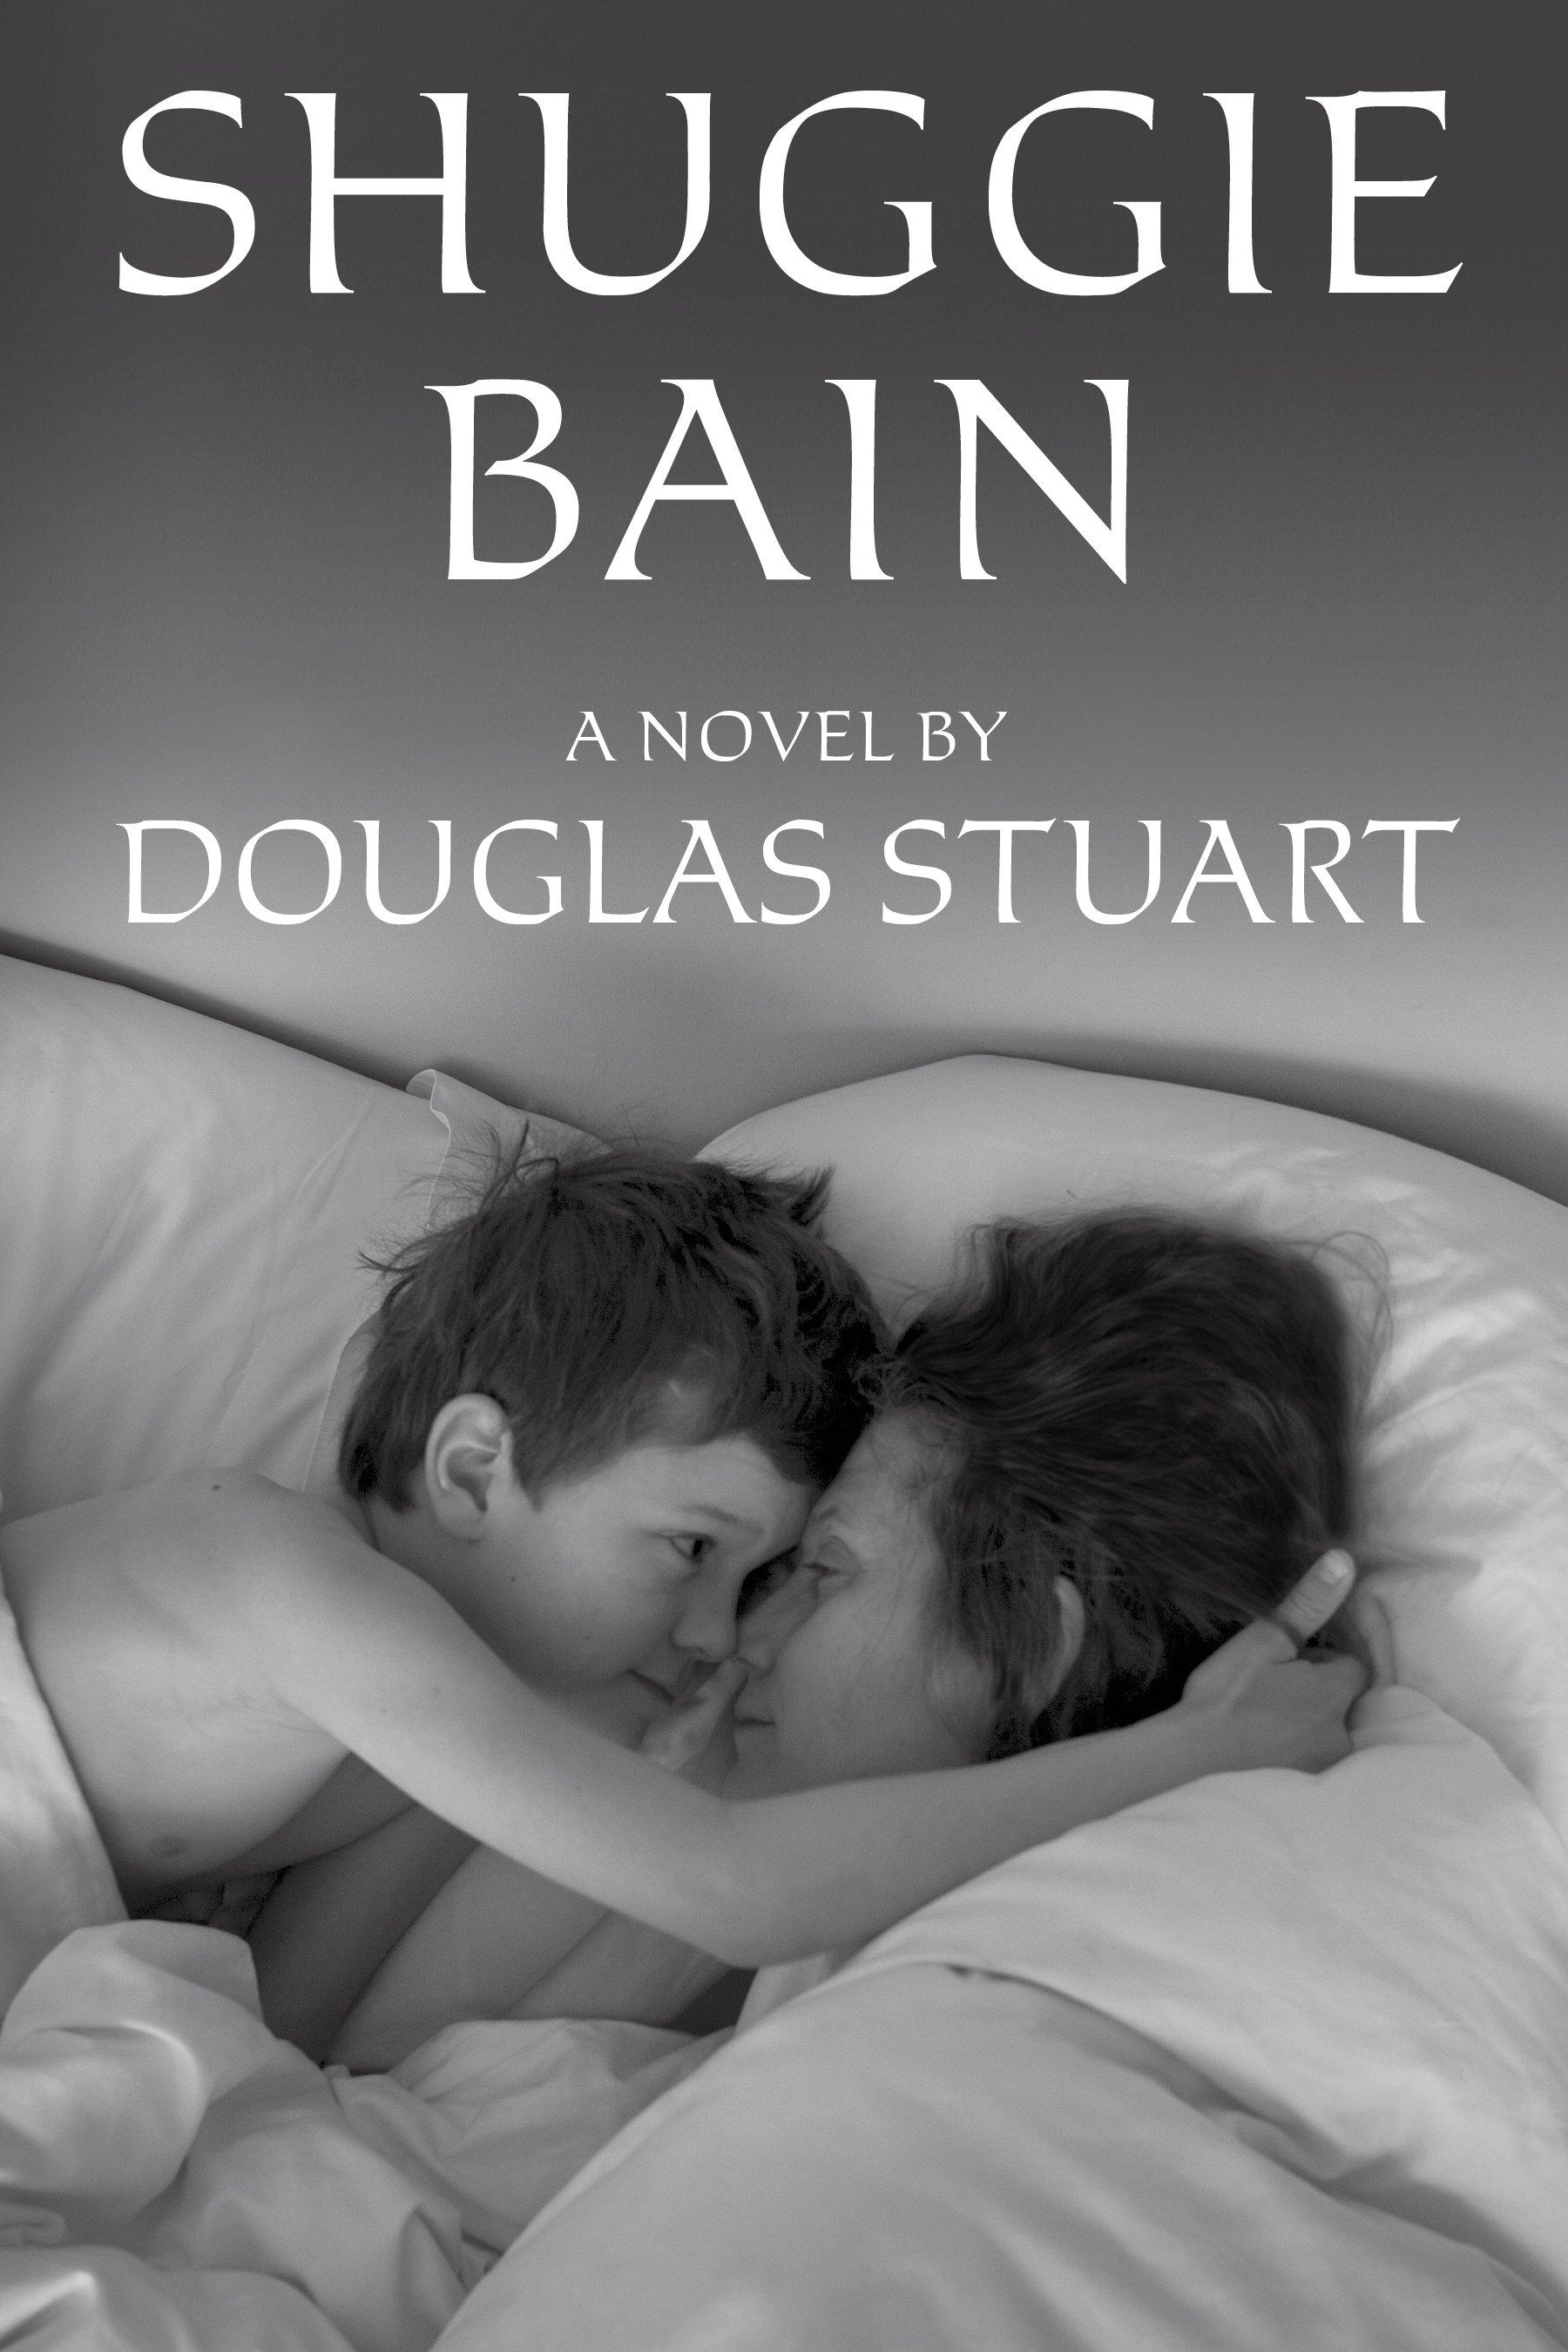 أفضل روايات 2020 - غلاف آخر لرواية Shuggie Bain - شوجي بين المتوجة بجائزة البوكر لعام 2020 للكاتب Douglas Stuart